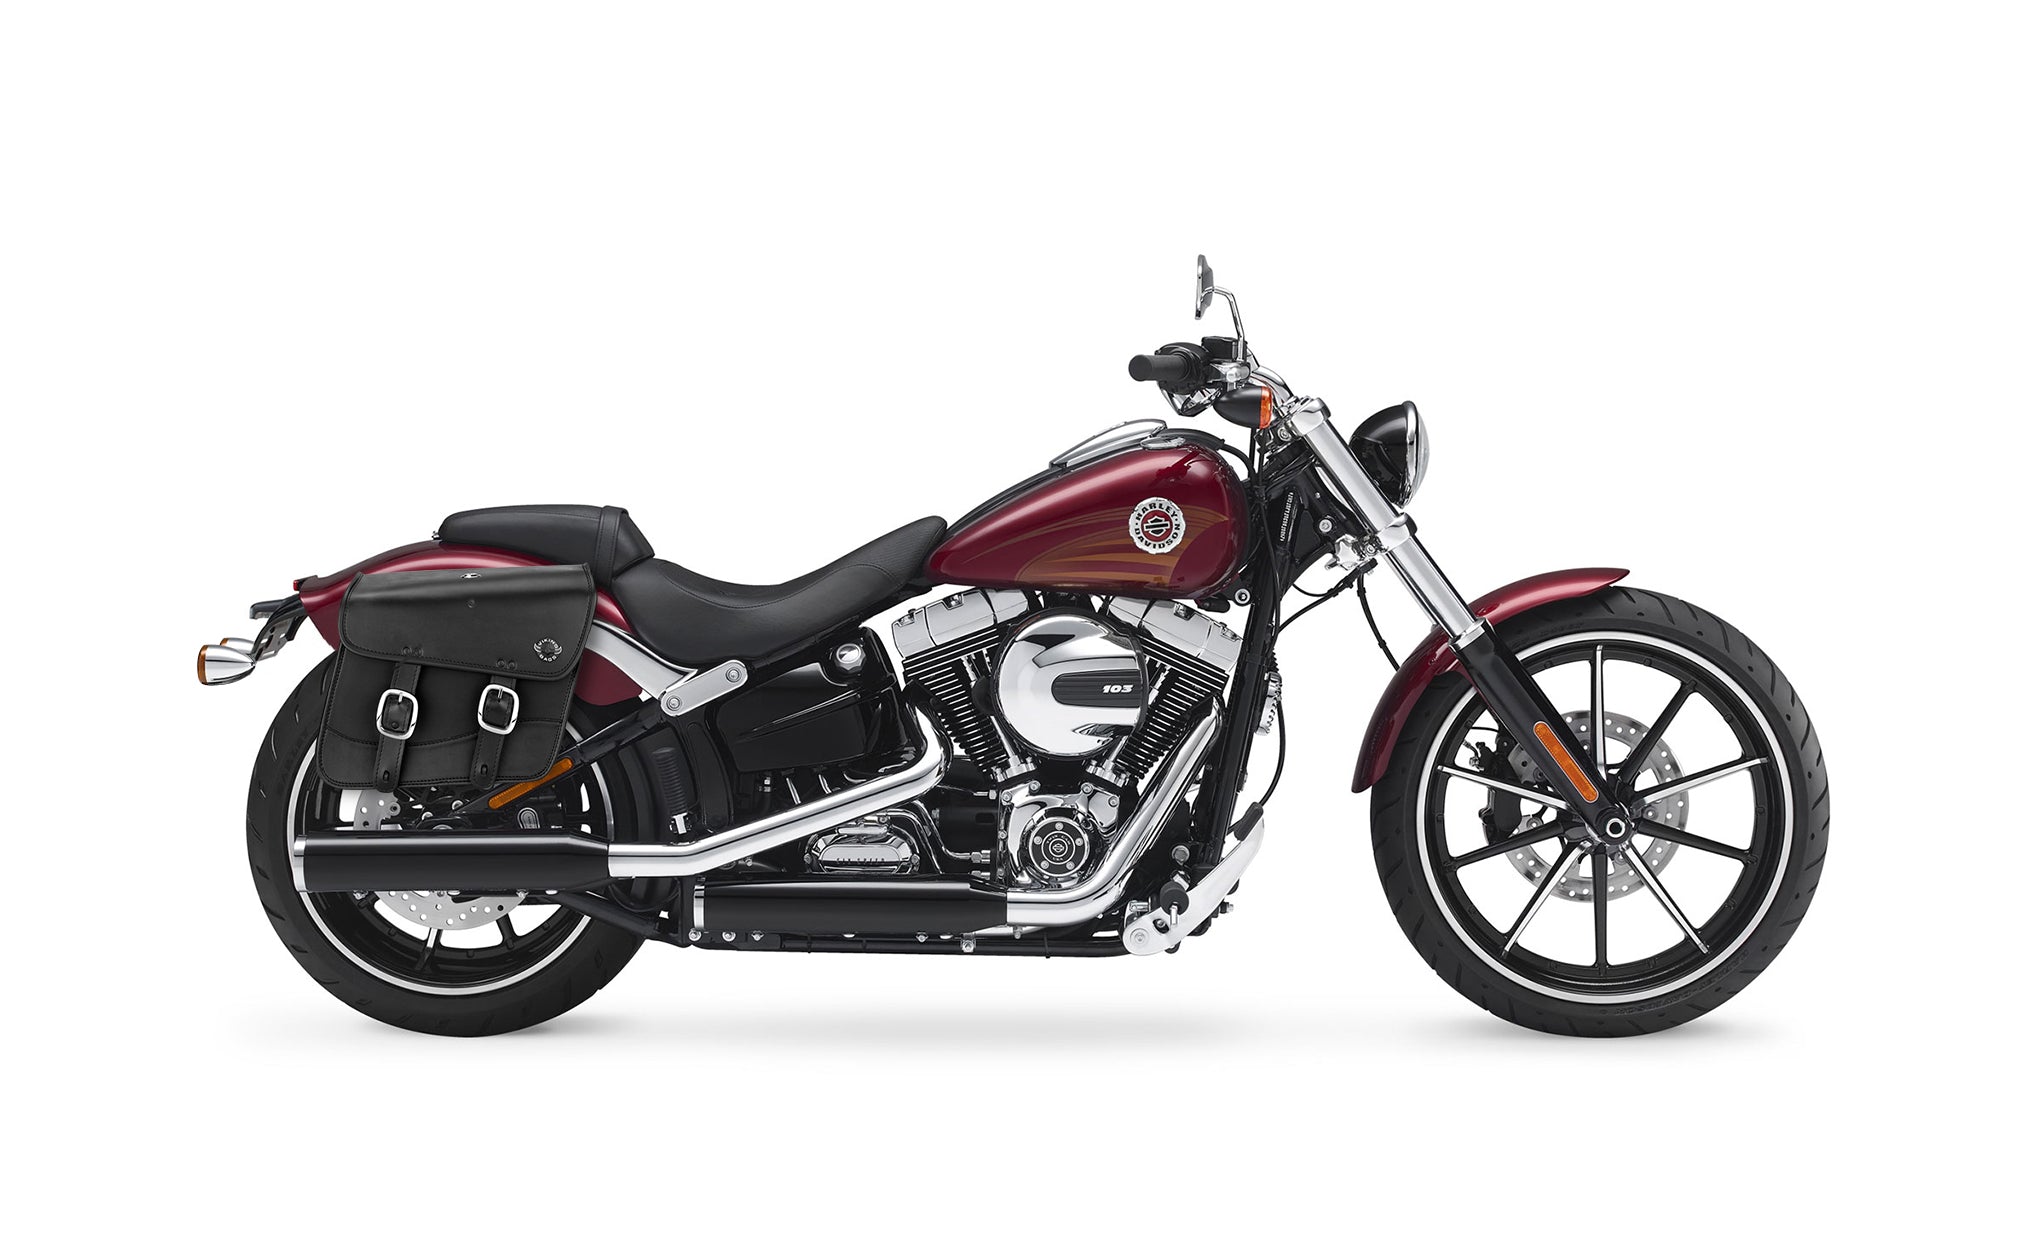 Viking Thor Medium Leather Motorcycle Saddlebags For Harley Davidson Softail Breakout Fxsb on Bike Photo @expand